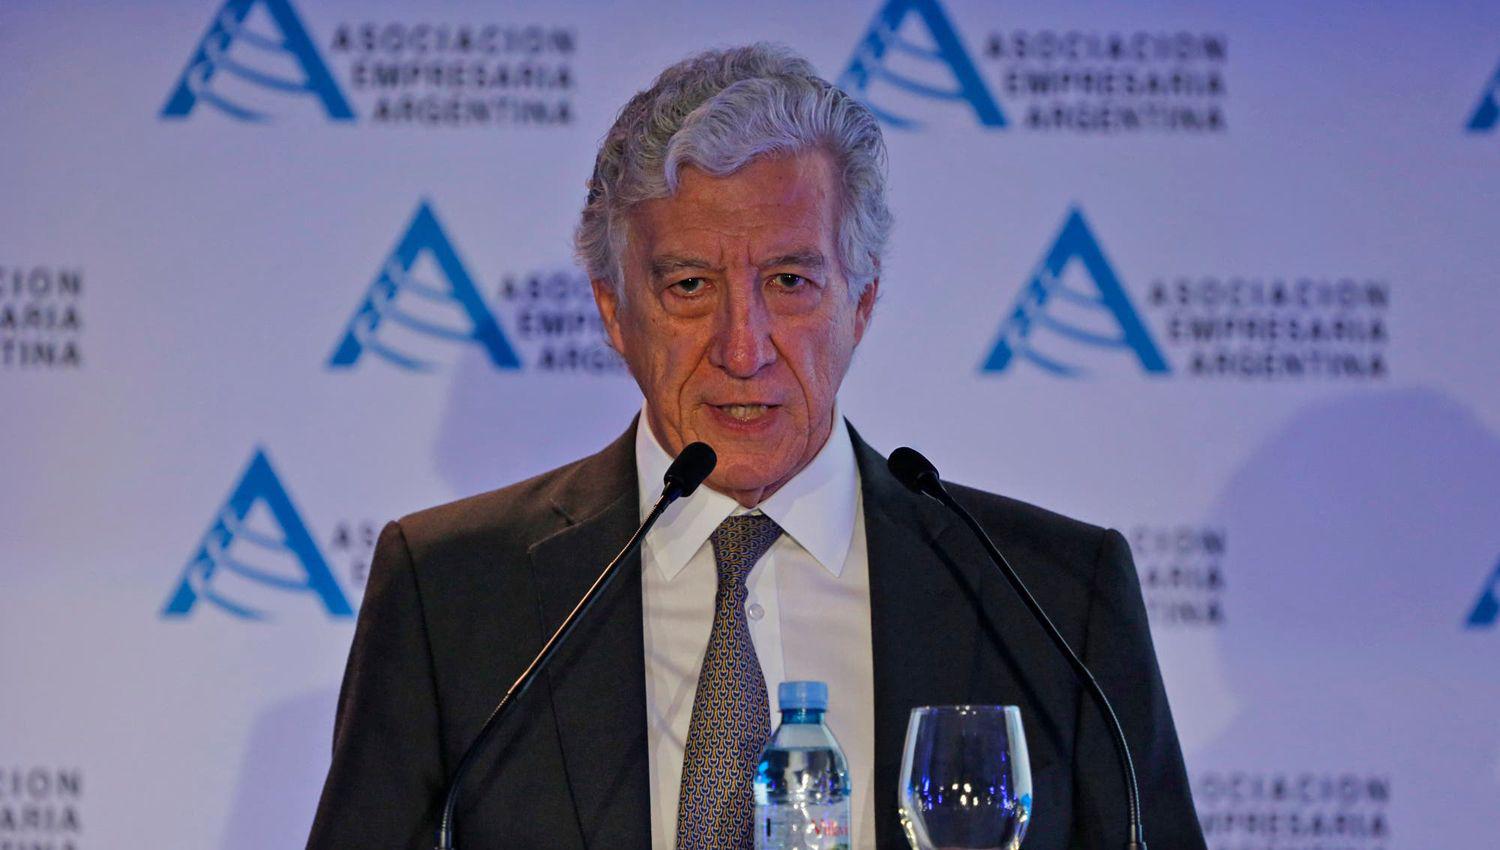 La Asociacioacuten Empresaria Argentina cree que el aporte extraordinario afecta la propiedad privada